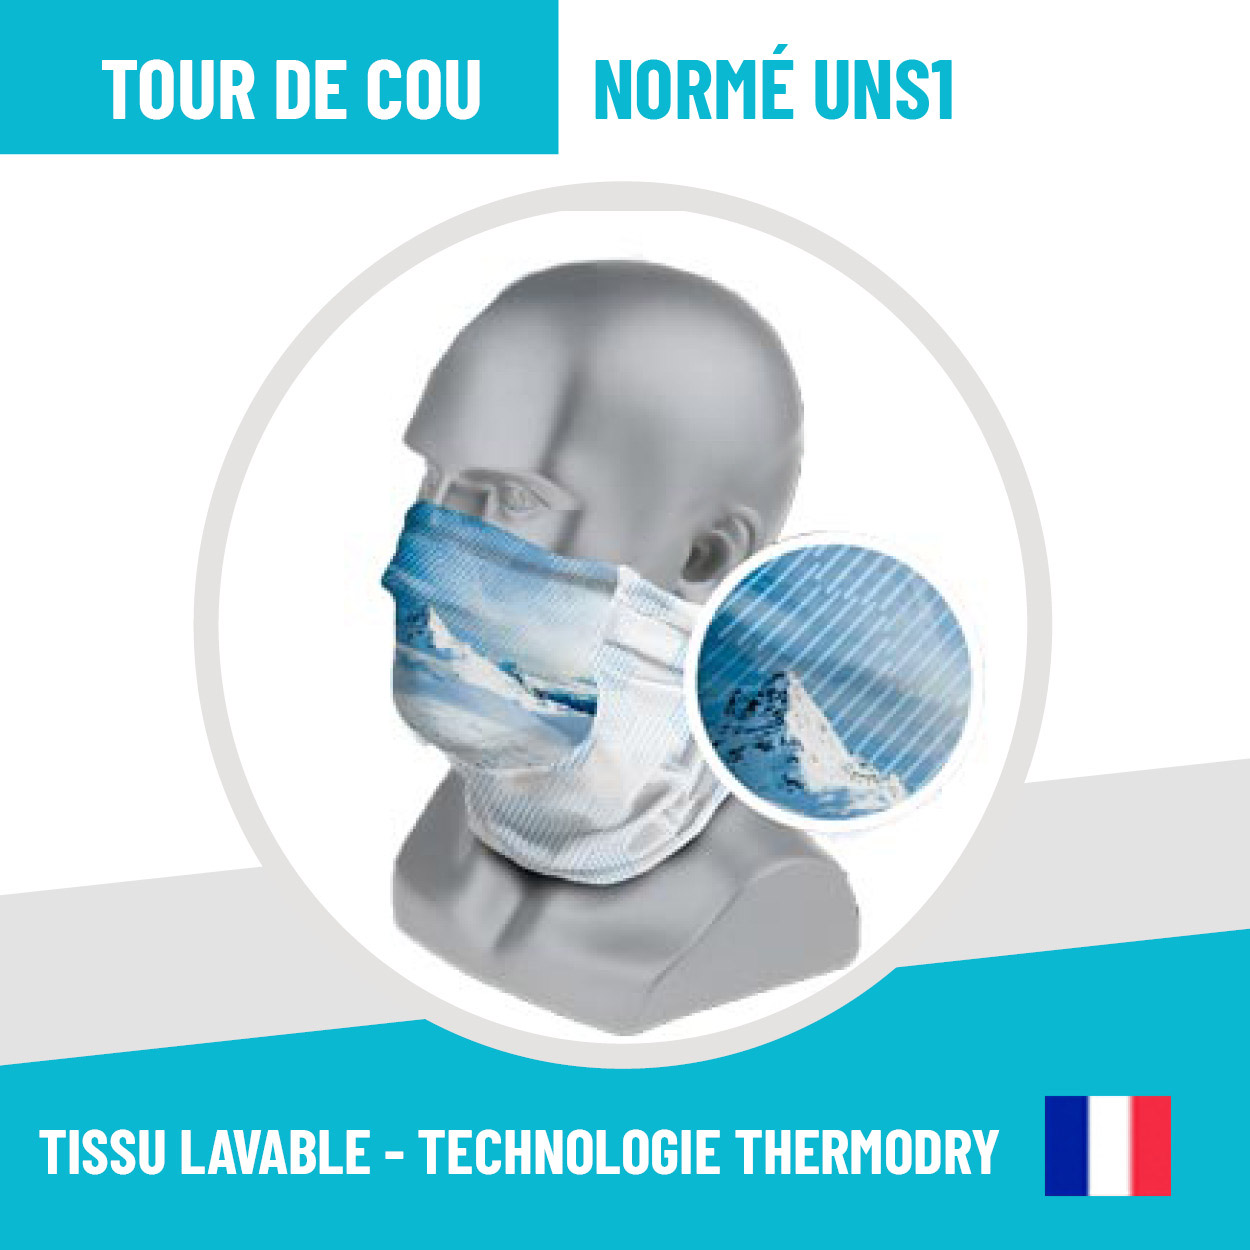 Tour de cou tissu Chamrousse certifié norme Afnor - 13€ - Chamrousse